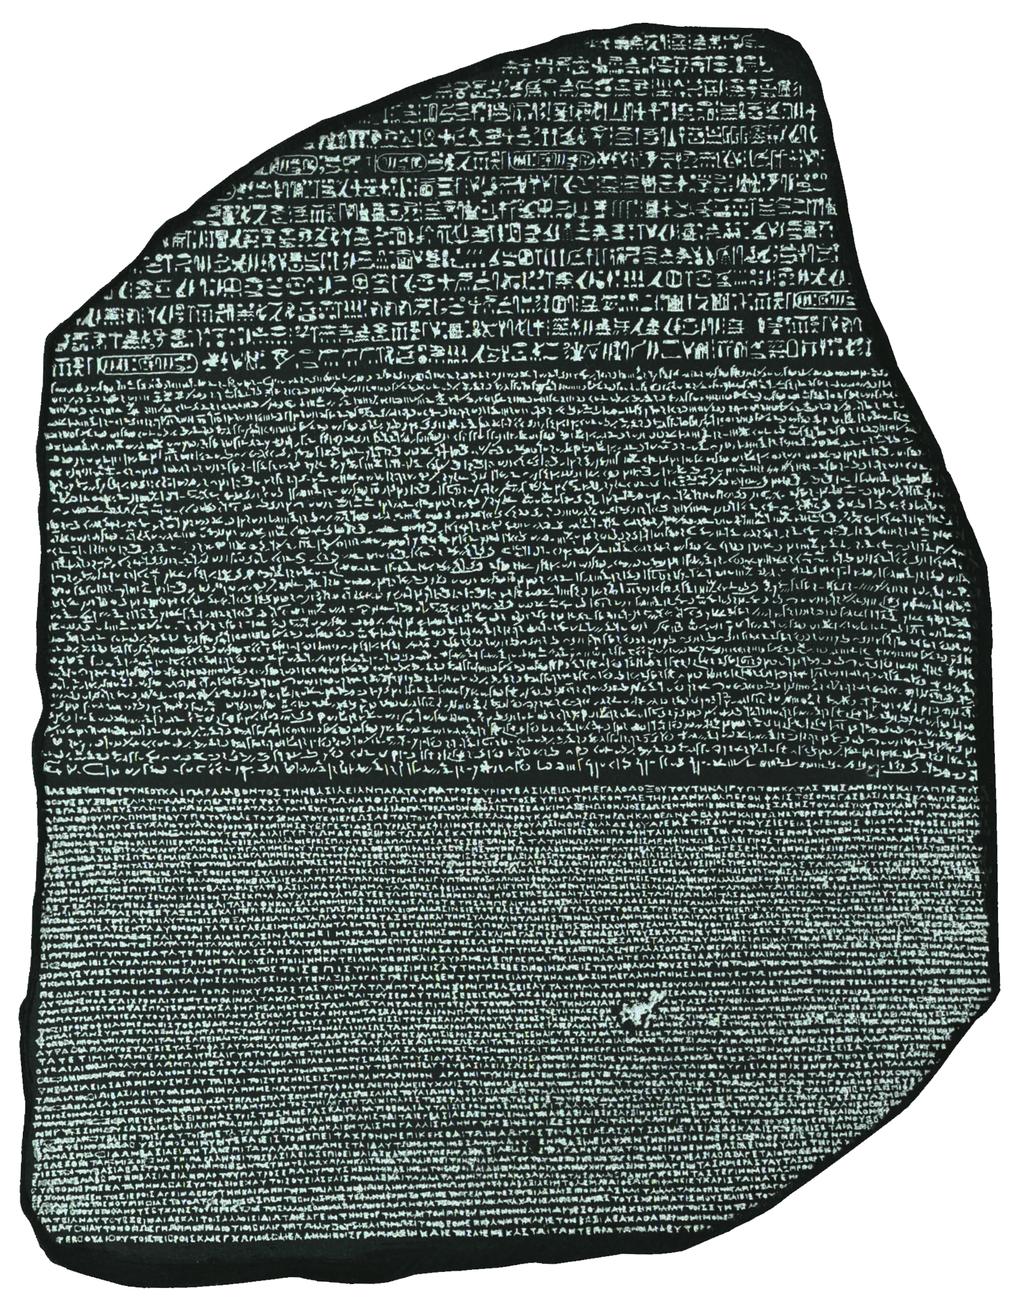 Entschlüsselung der Hieroglyphen Rosetta-Stein 196 v. Chr.